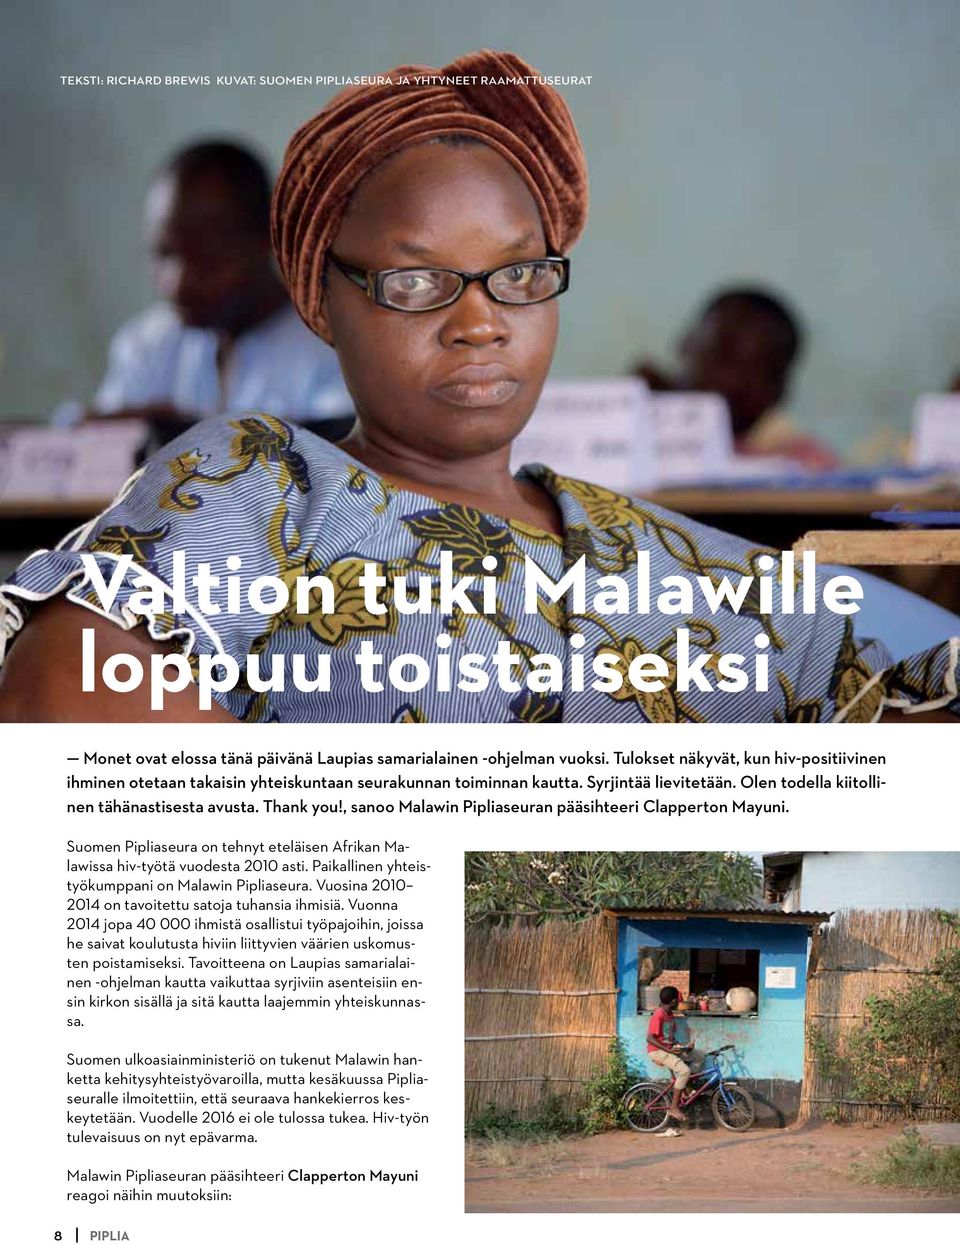 , sanoo Malawin Pipliaseuran pääsihteeri Clapperton Mayuni. Suomen Pipliaseura on tehnyt eteläisen Afrikan Malawissa hiv-työtä vuodesta 2010 asti. Paikallinen yhteistyökumppani on Malawin Pipliaseura.